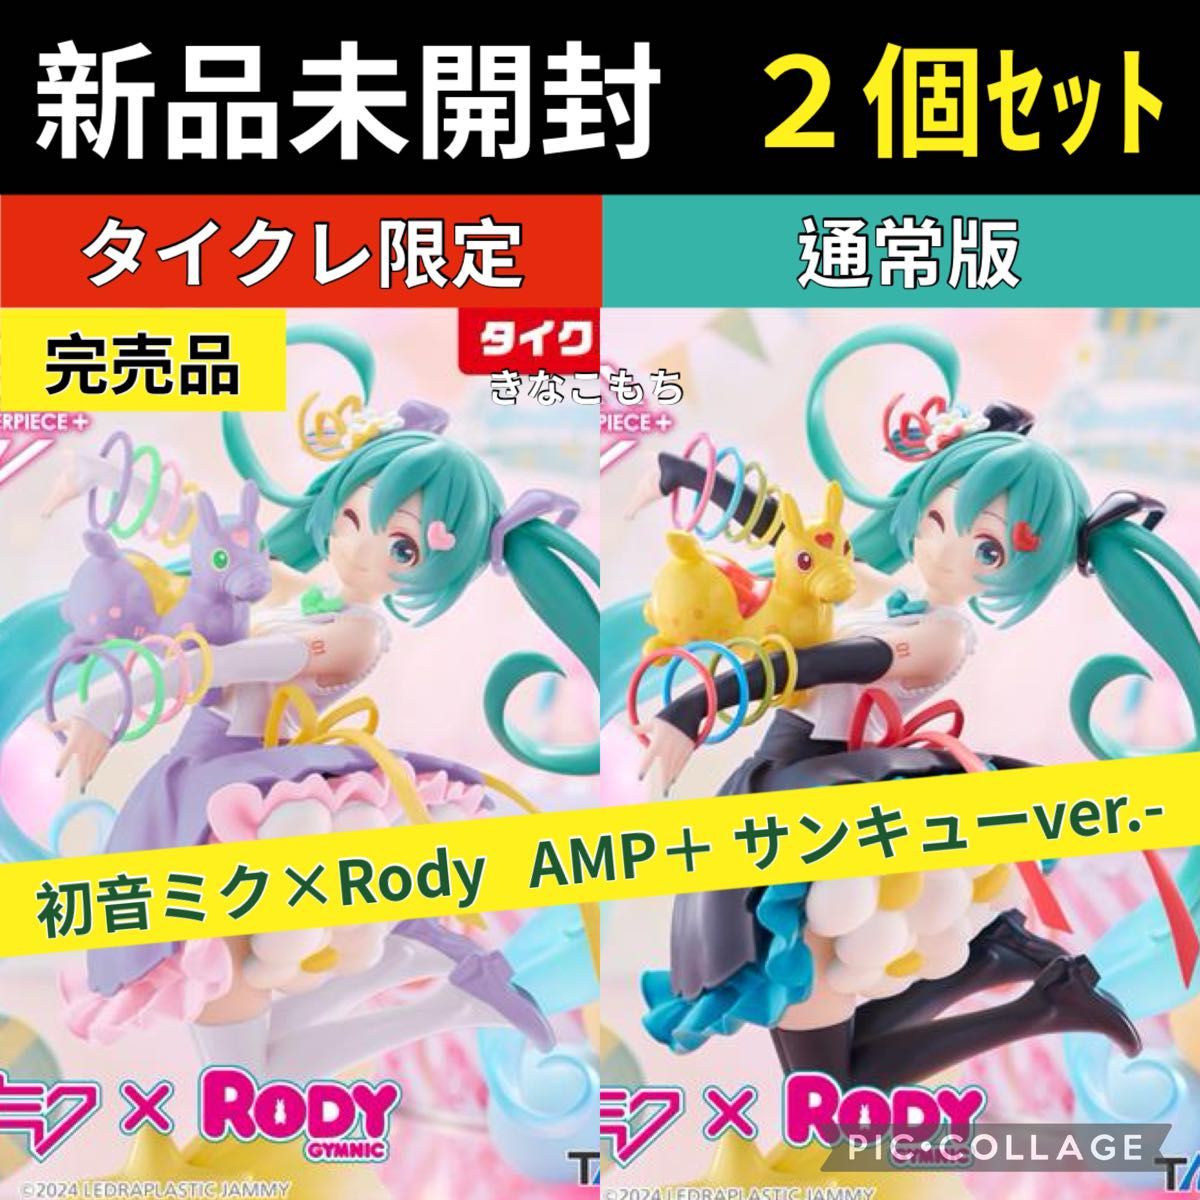 10【限定+通常】初音ミク×Rody AMP＋ フィギュア 39サンキューセット